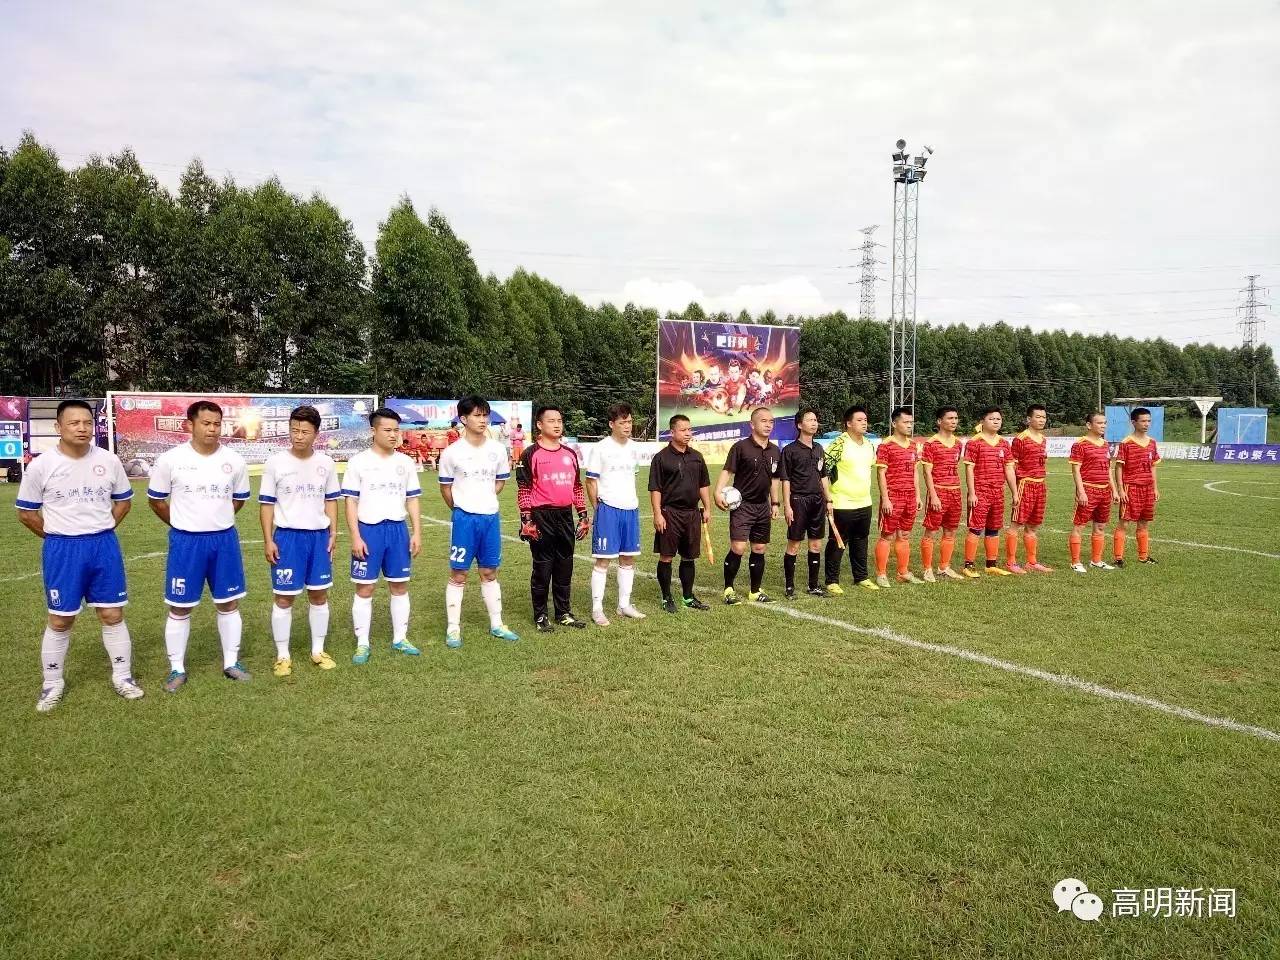 中国五人足球队名单_中国少年u12足球队名单_中国足球队进入世界杯